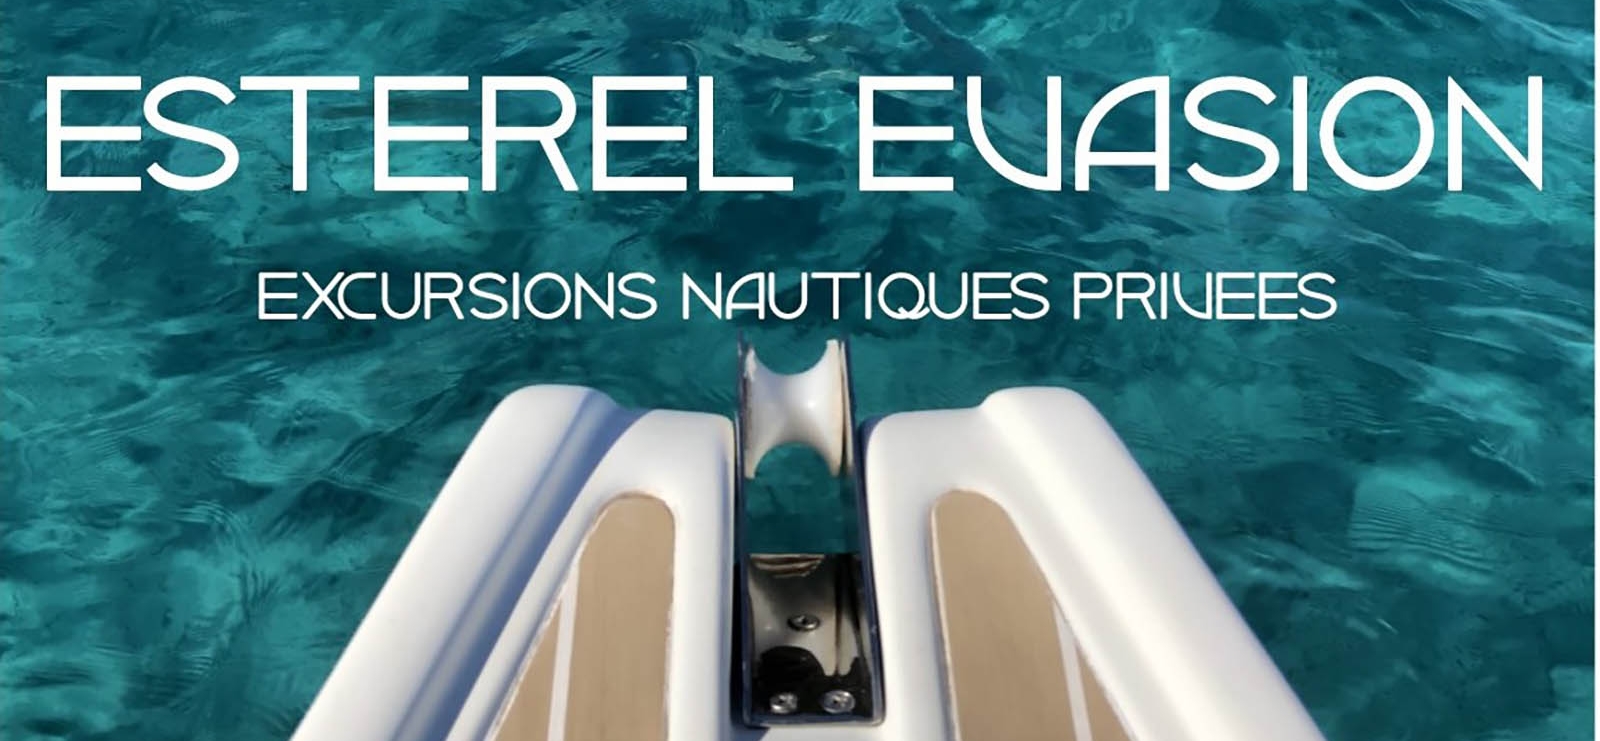 Sailing excursions with Estérel Evasion